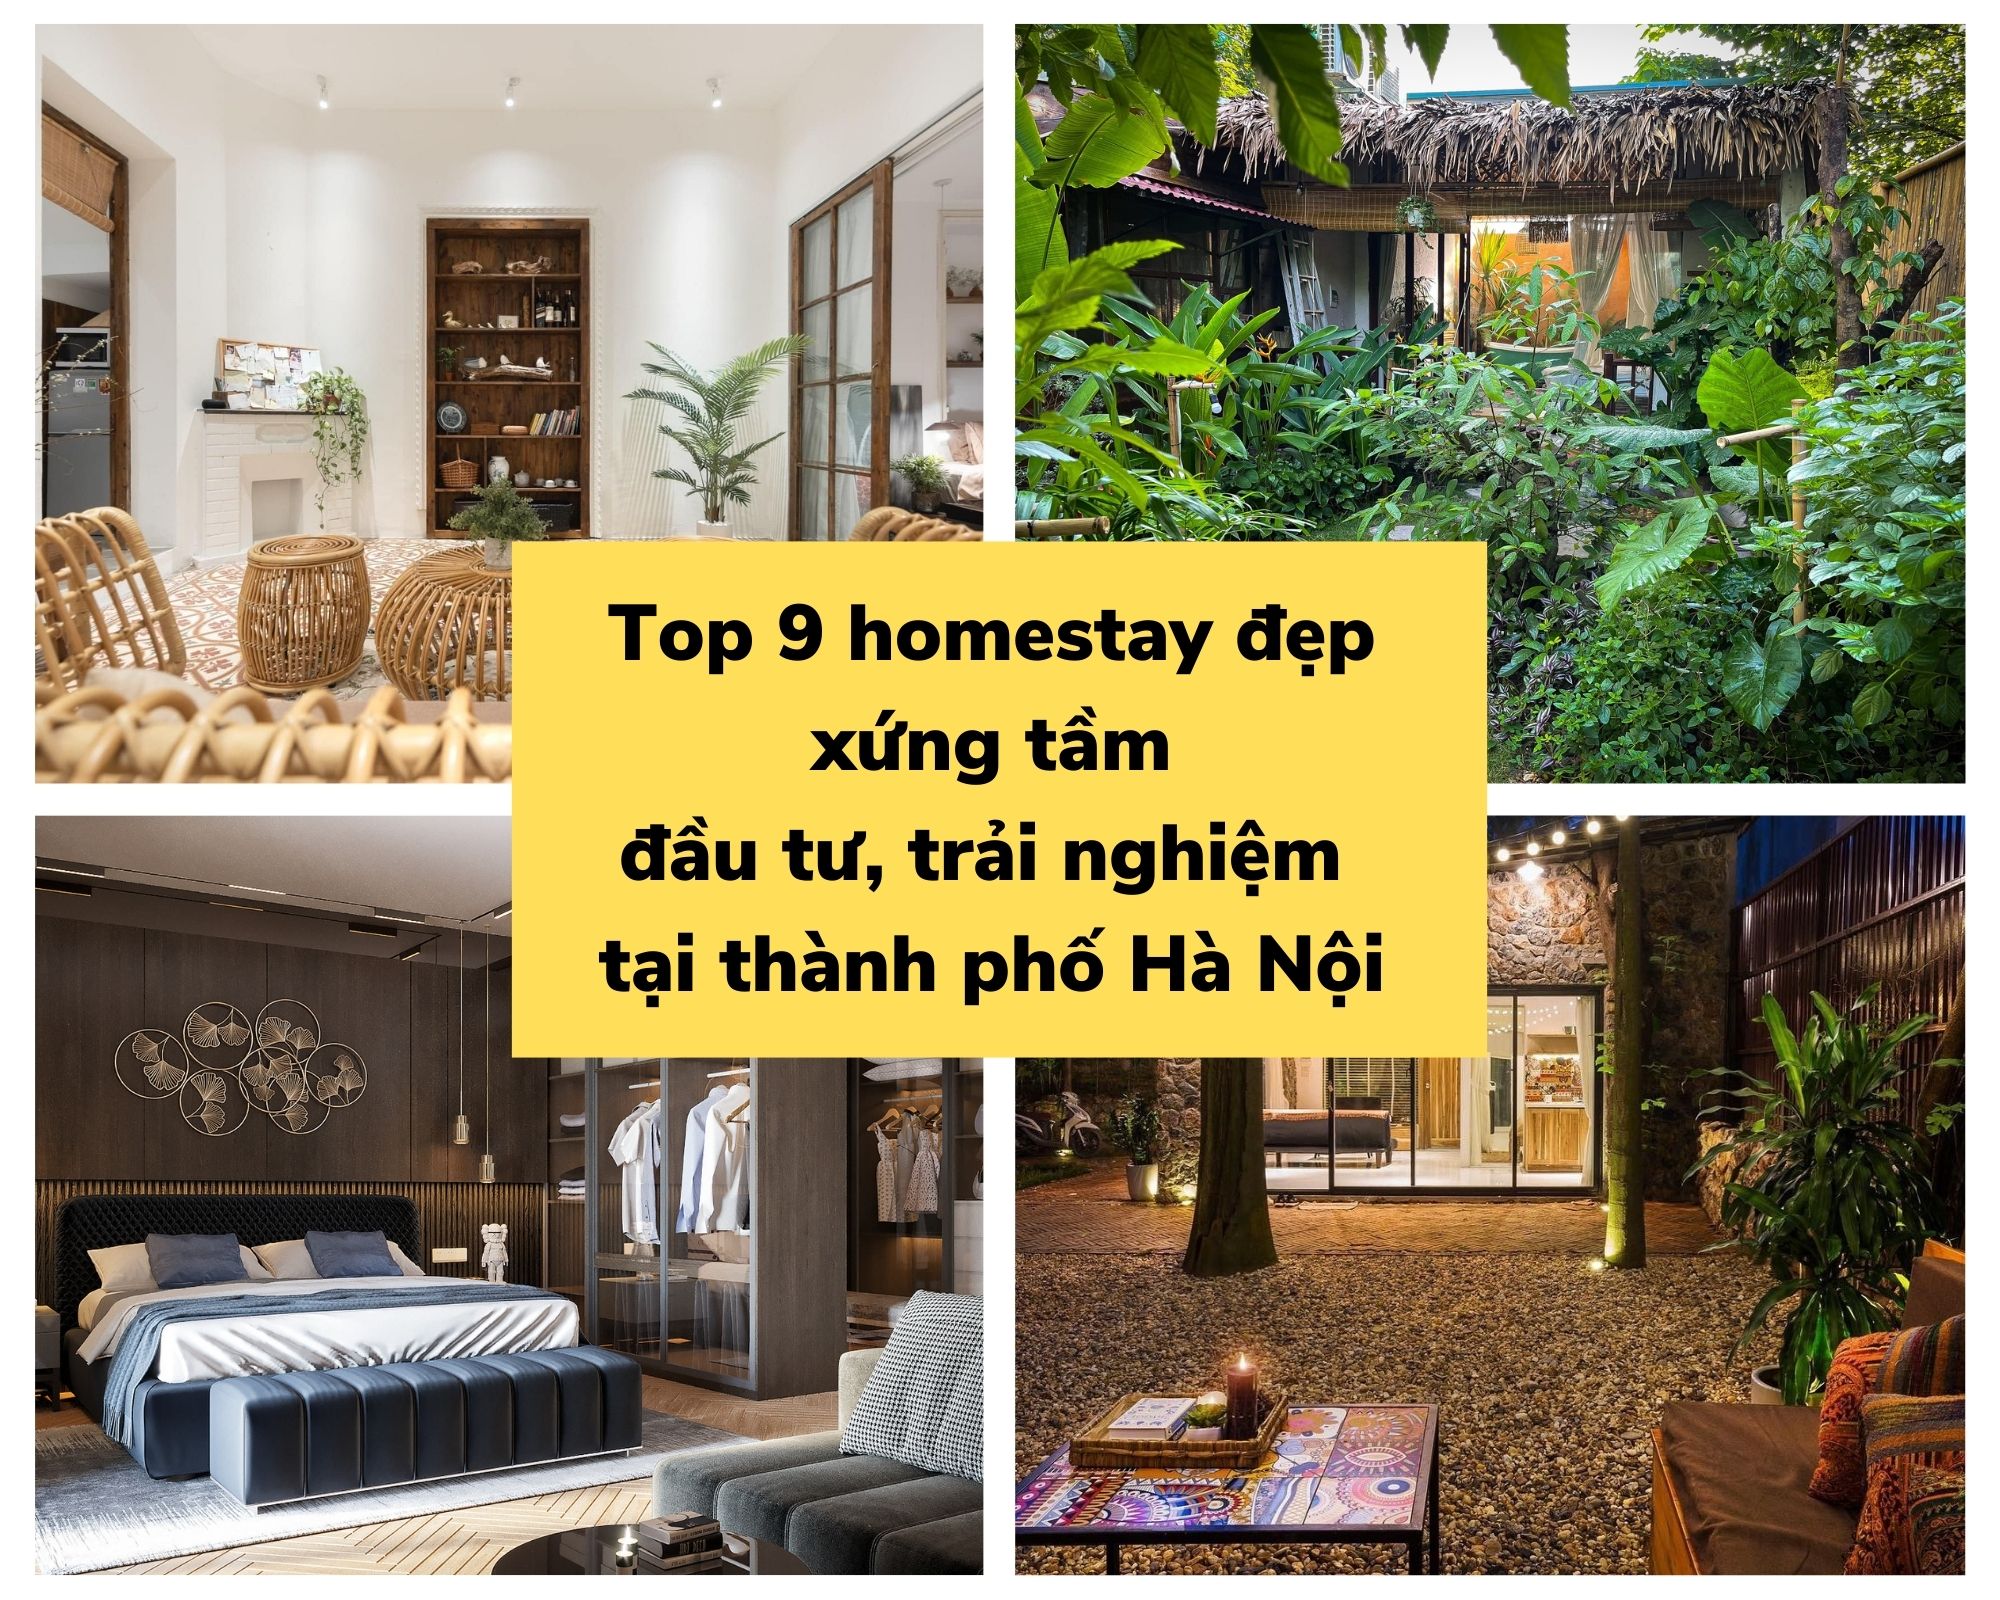 Đầu tư homestay tại Hà Nội mà không tham khảo 9 mẫu homestay sau để học hỏi cách